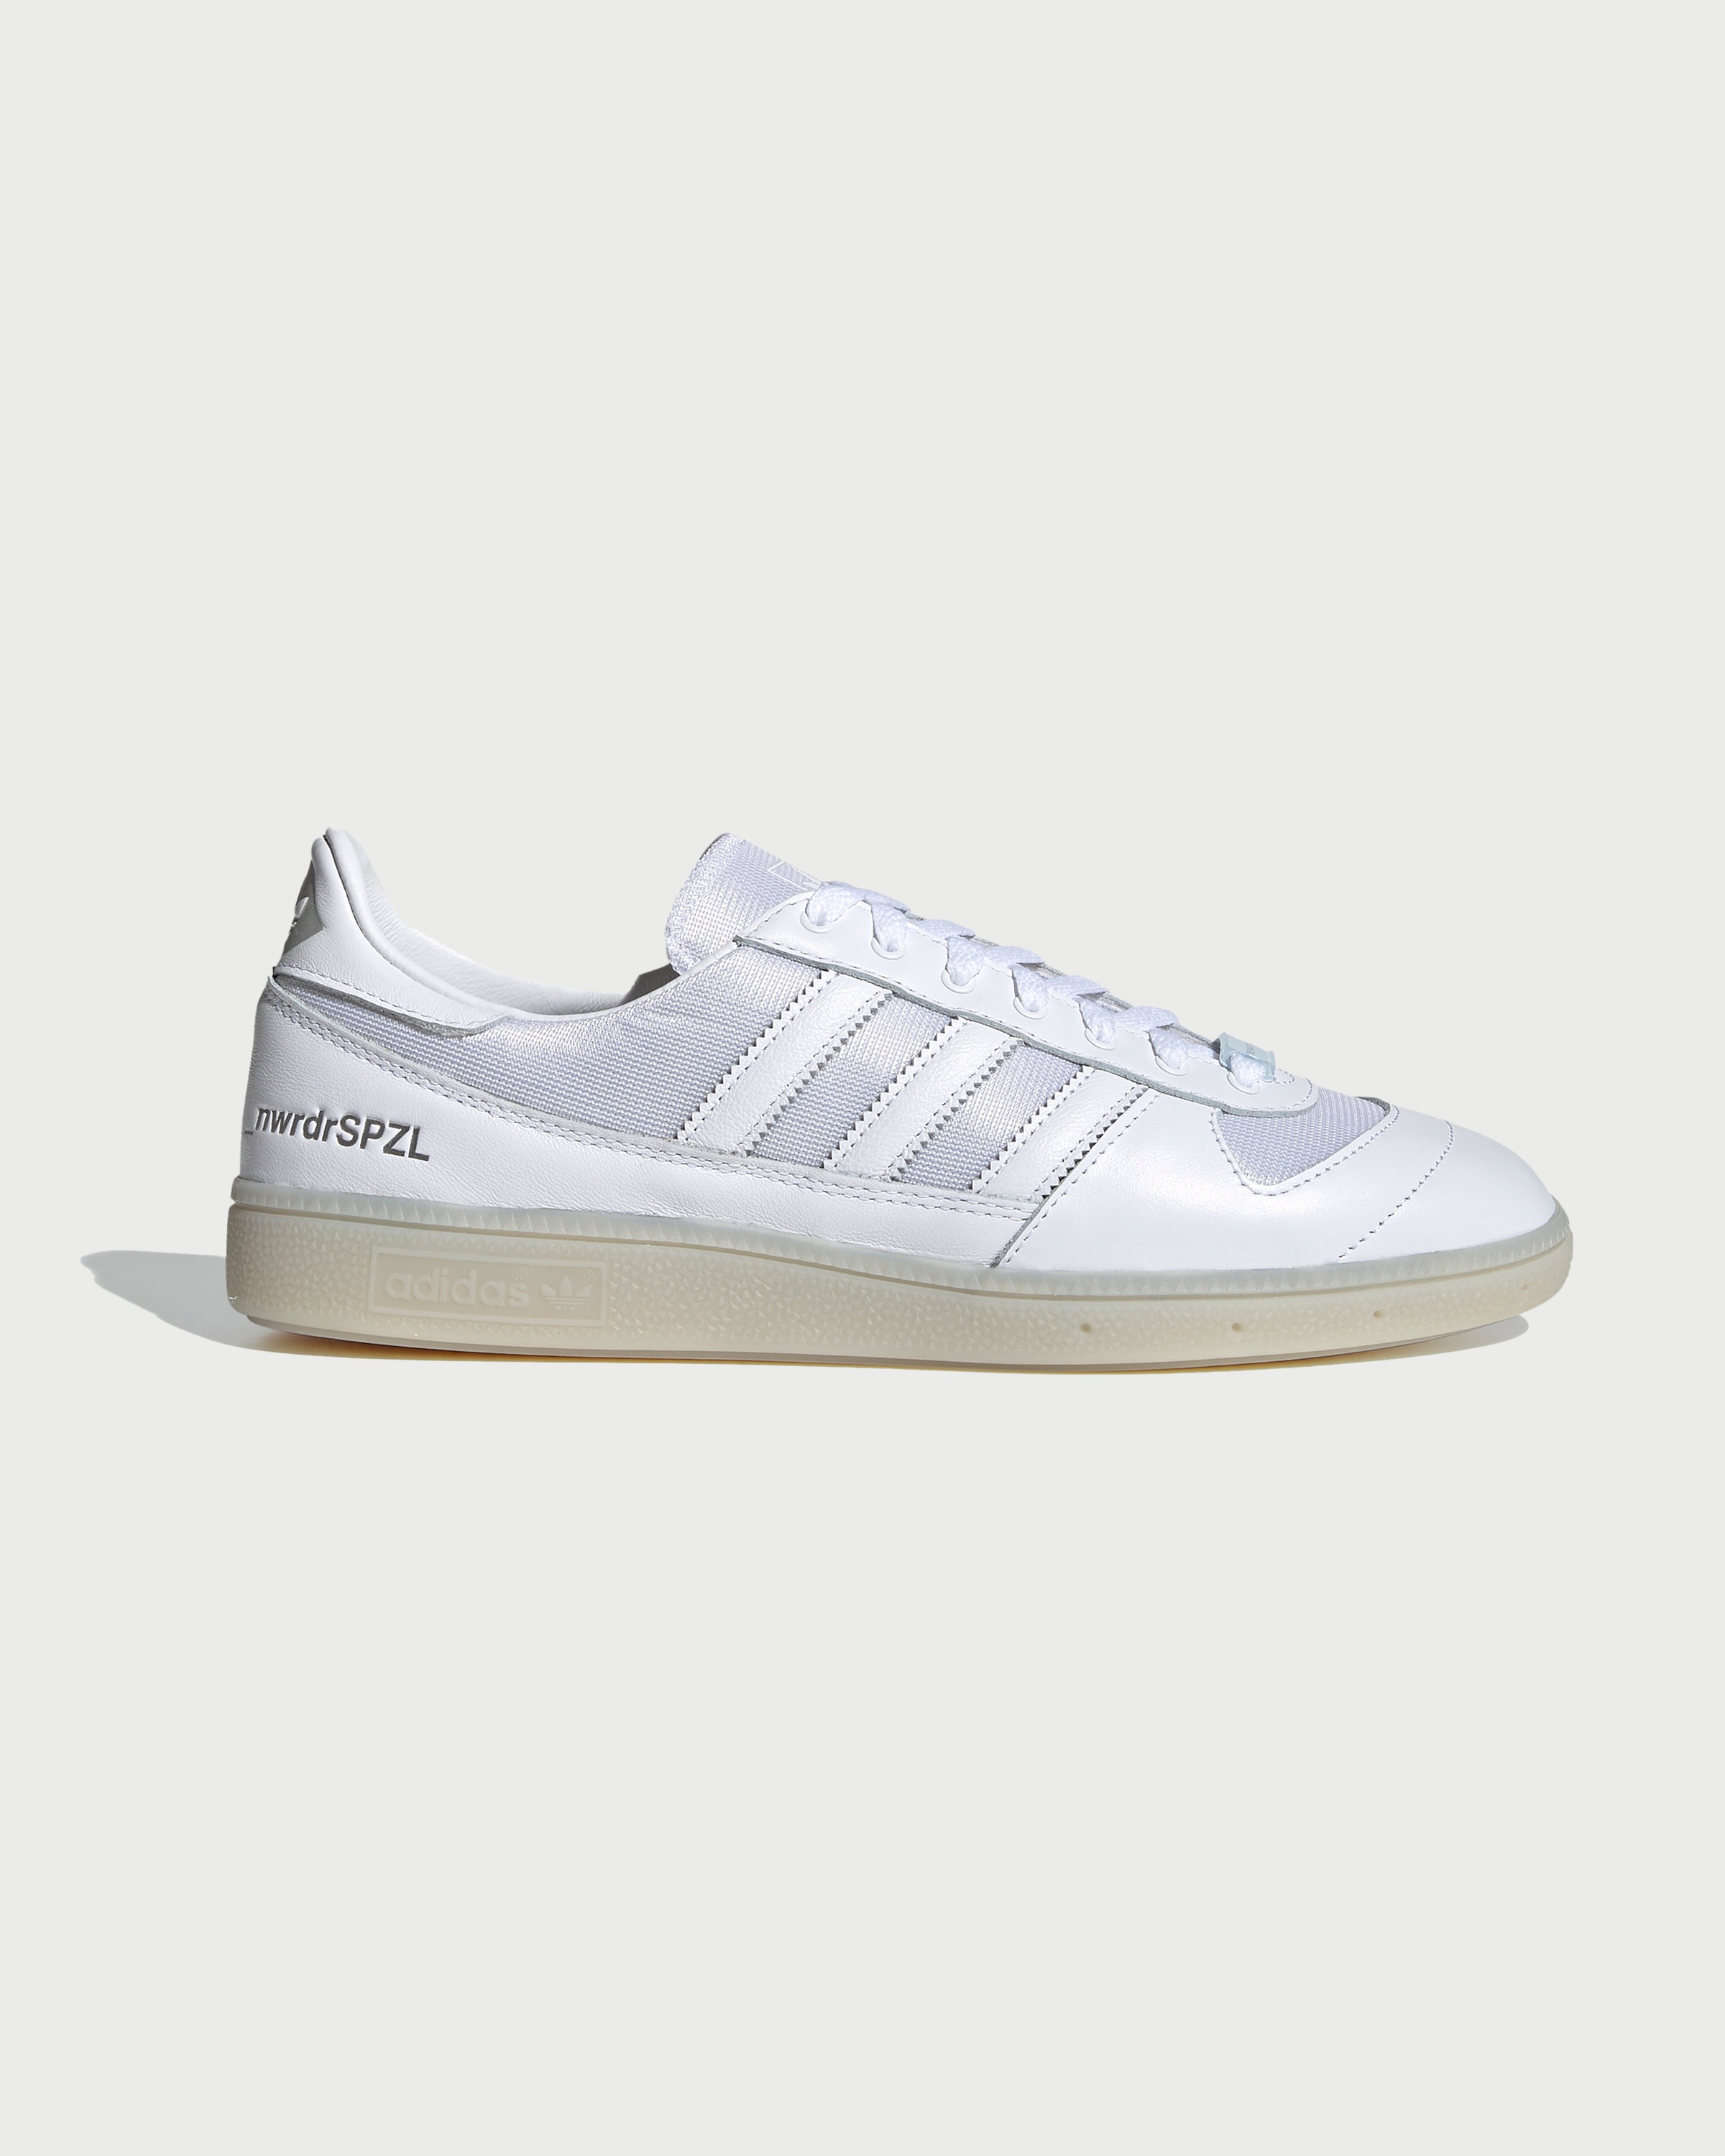 Adidas – Wilsy Spezial x New Order White - Sneakers - White - Image 1